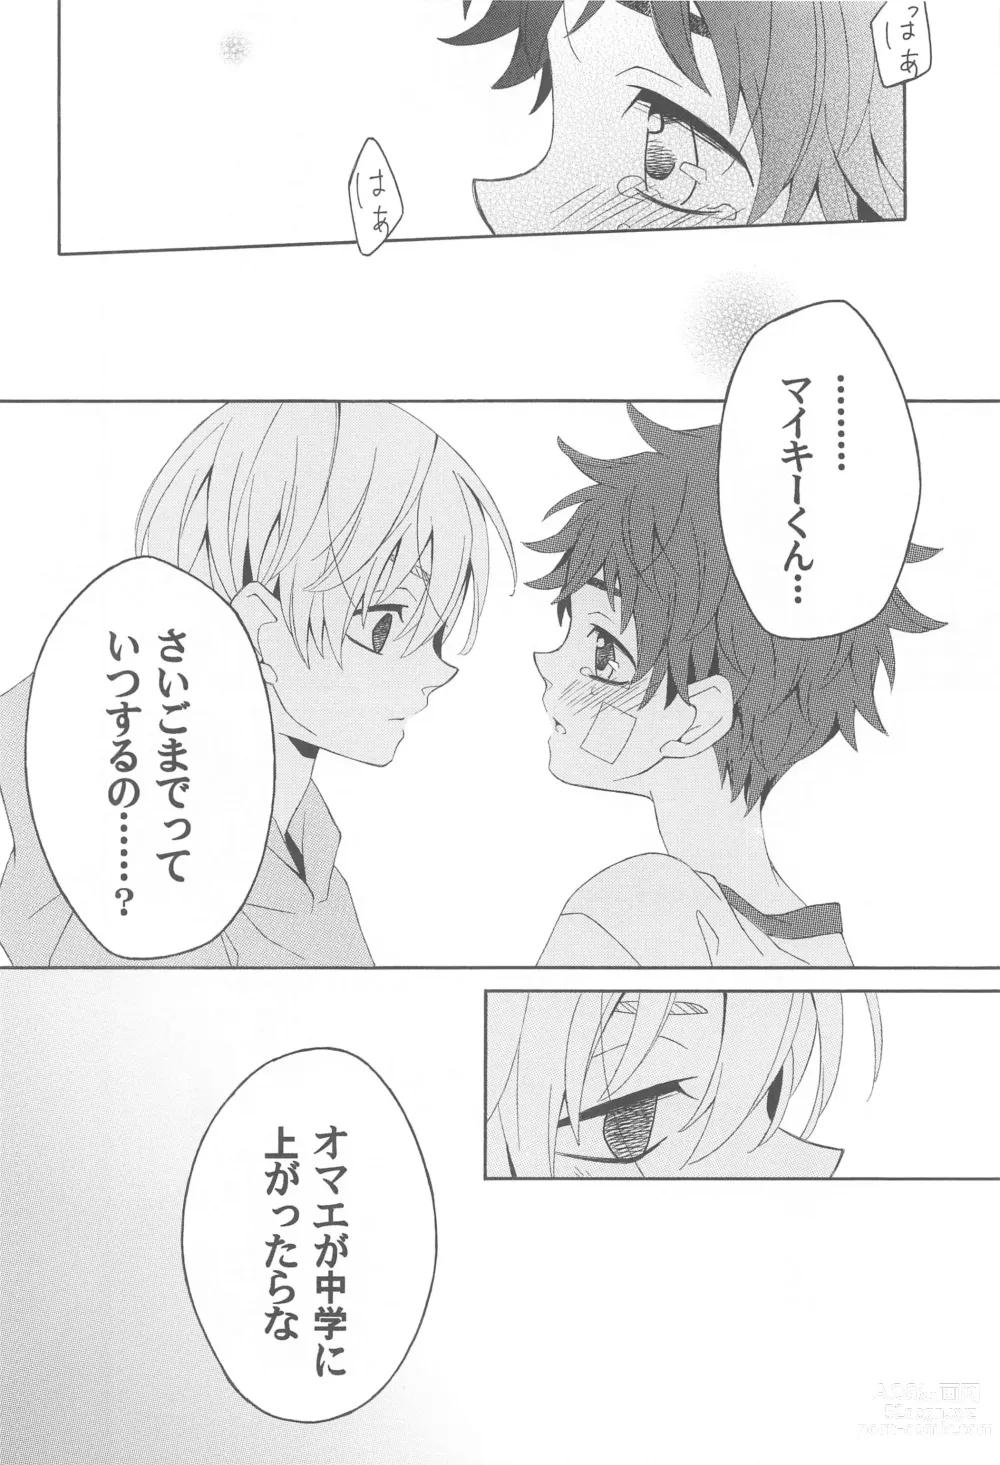 Page 13 of doujinshi Hana to Hachimitsu to Aoiharu